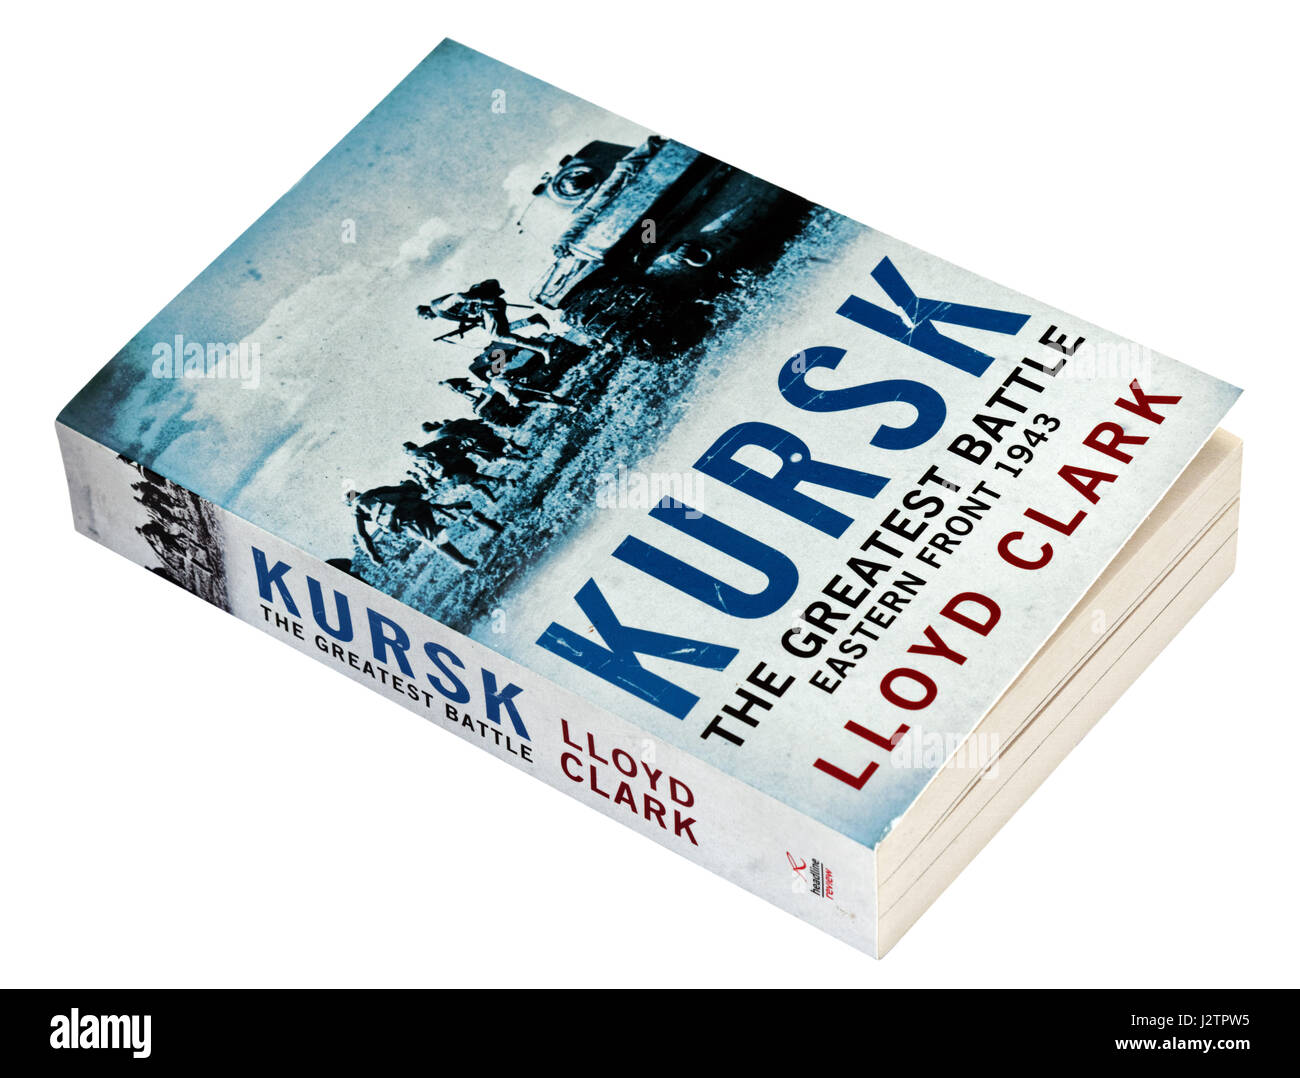 Kursk: The Greatest Battle by Lloyd Clark Stock Photo